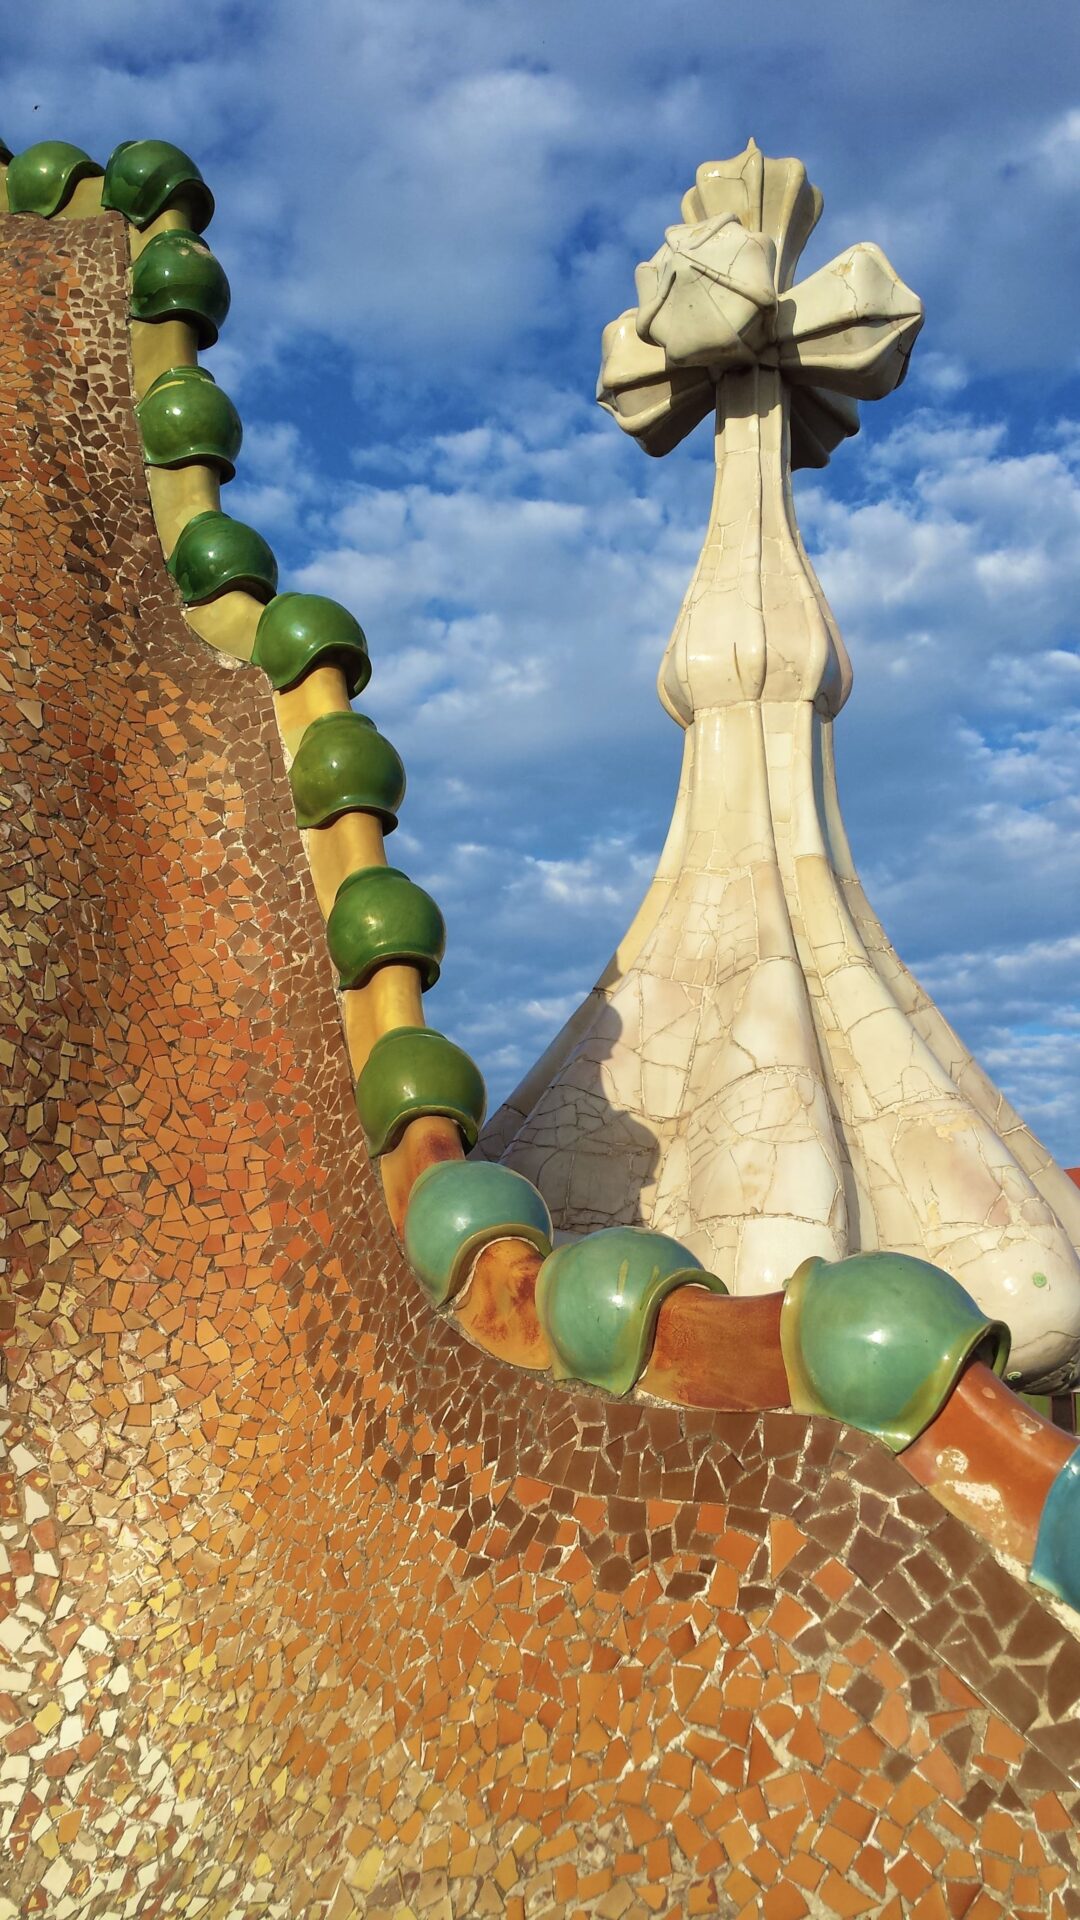 カサ・バトリョ屋上の正面ファサード側に、球根状の塔がある。